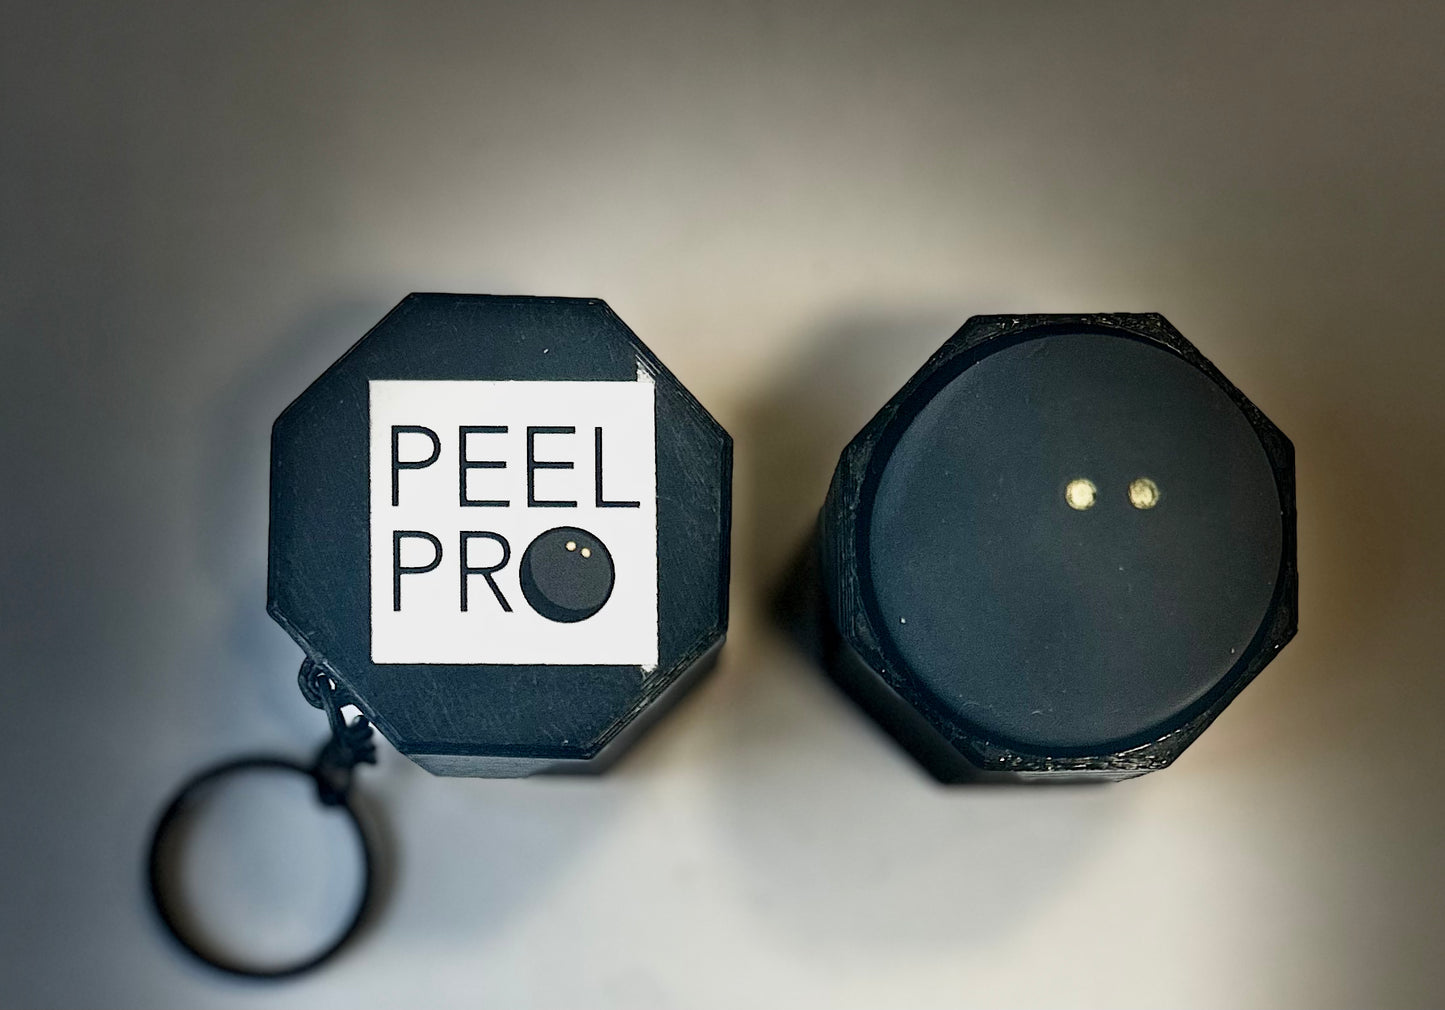 The PeelPro 1.0